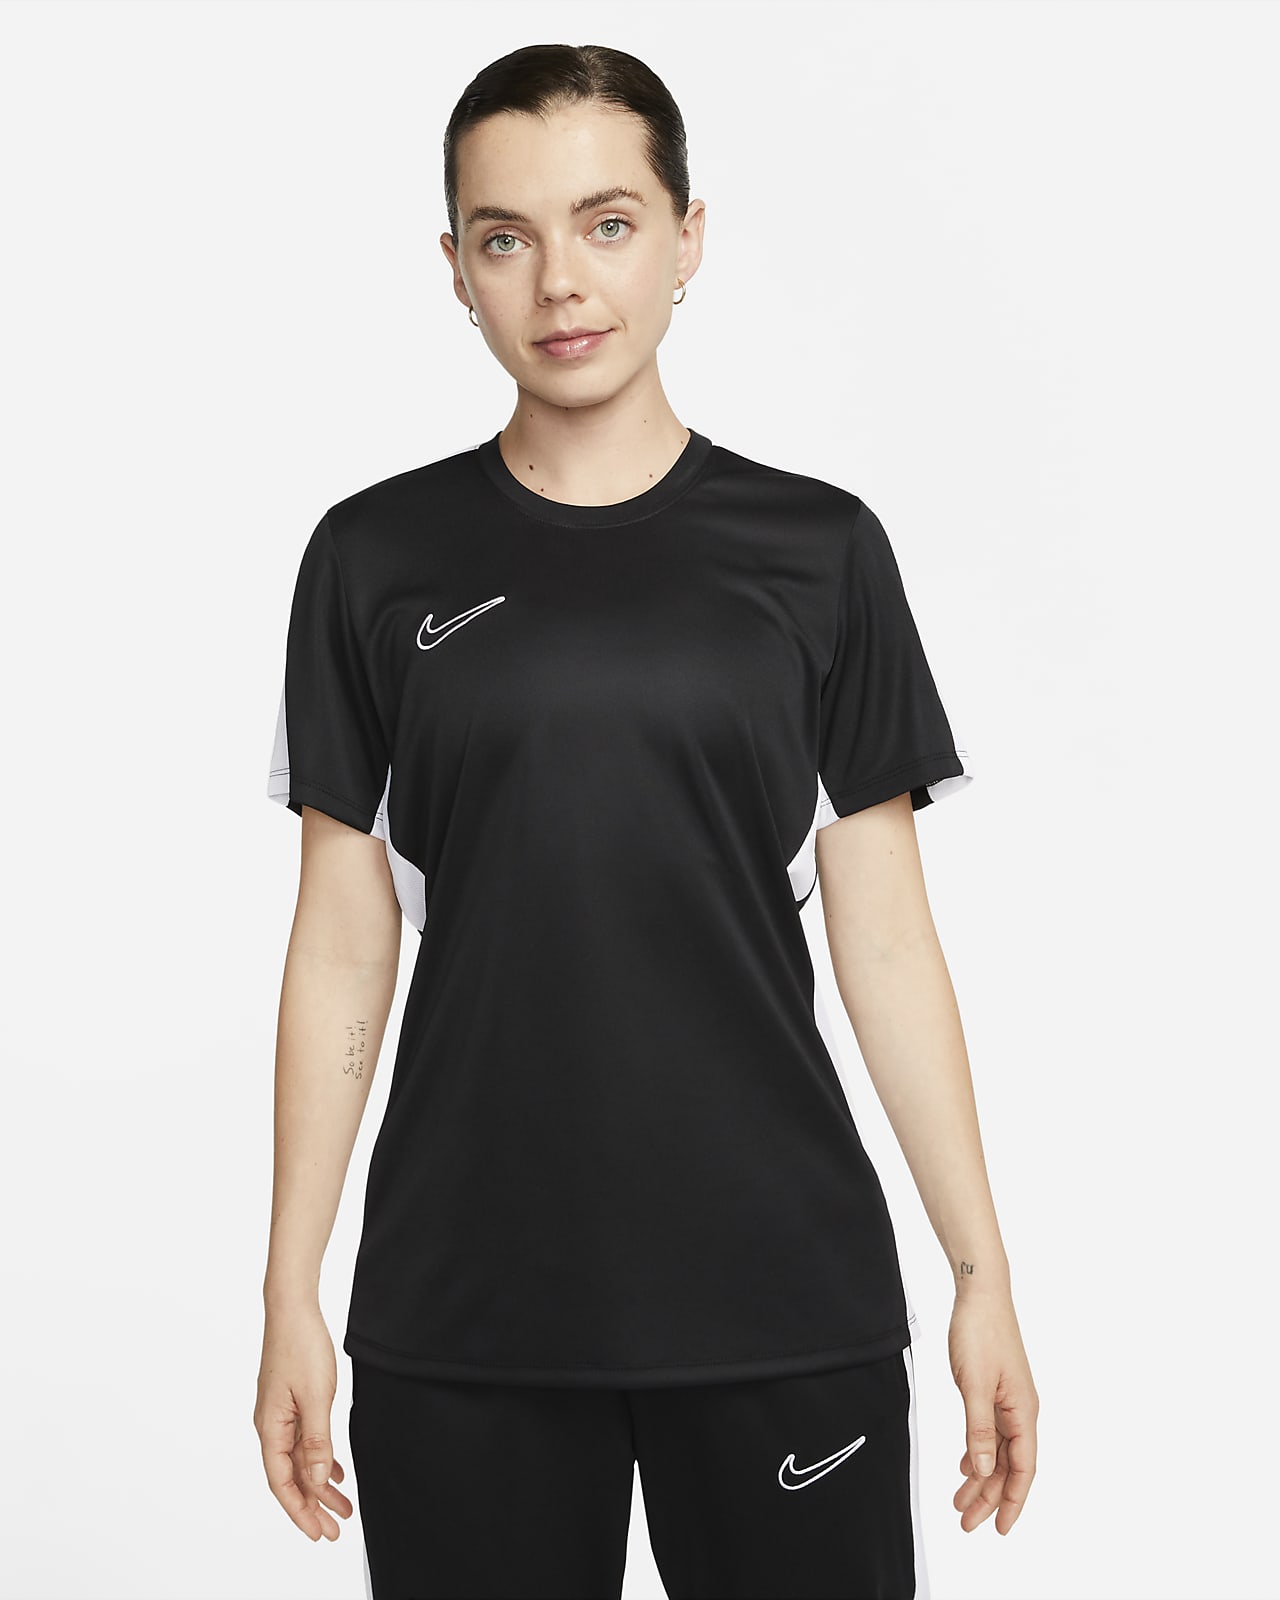 Damka koszulka piłkarska z krótkim rękawem Nike Dri-FIT Academy